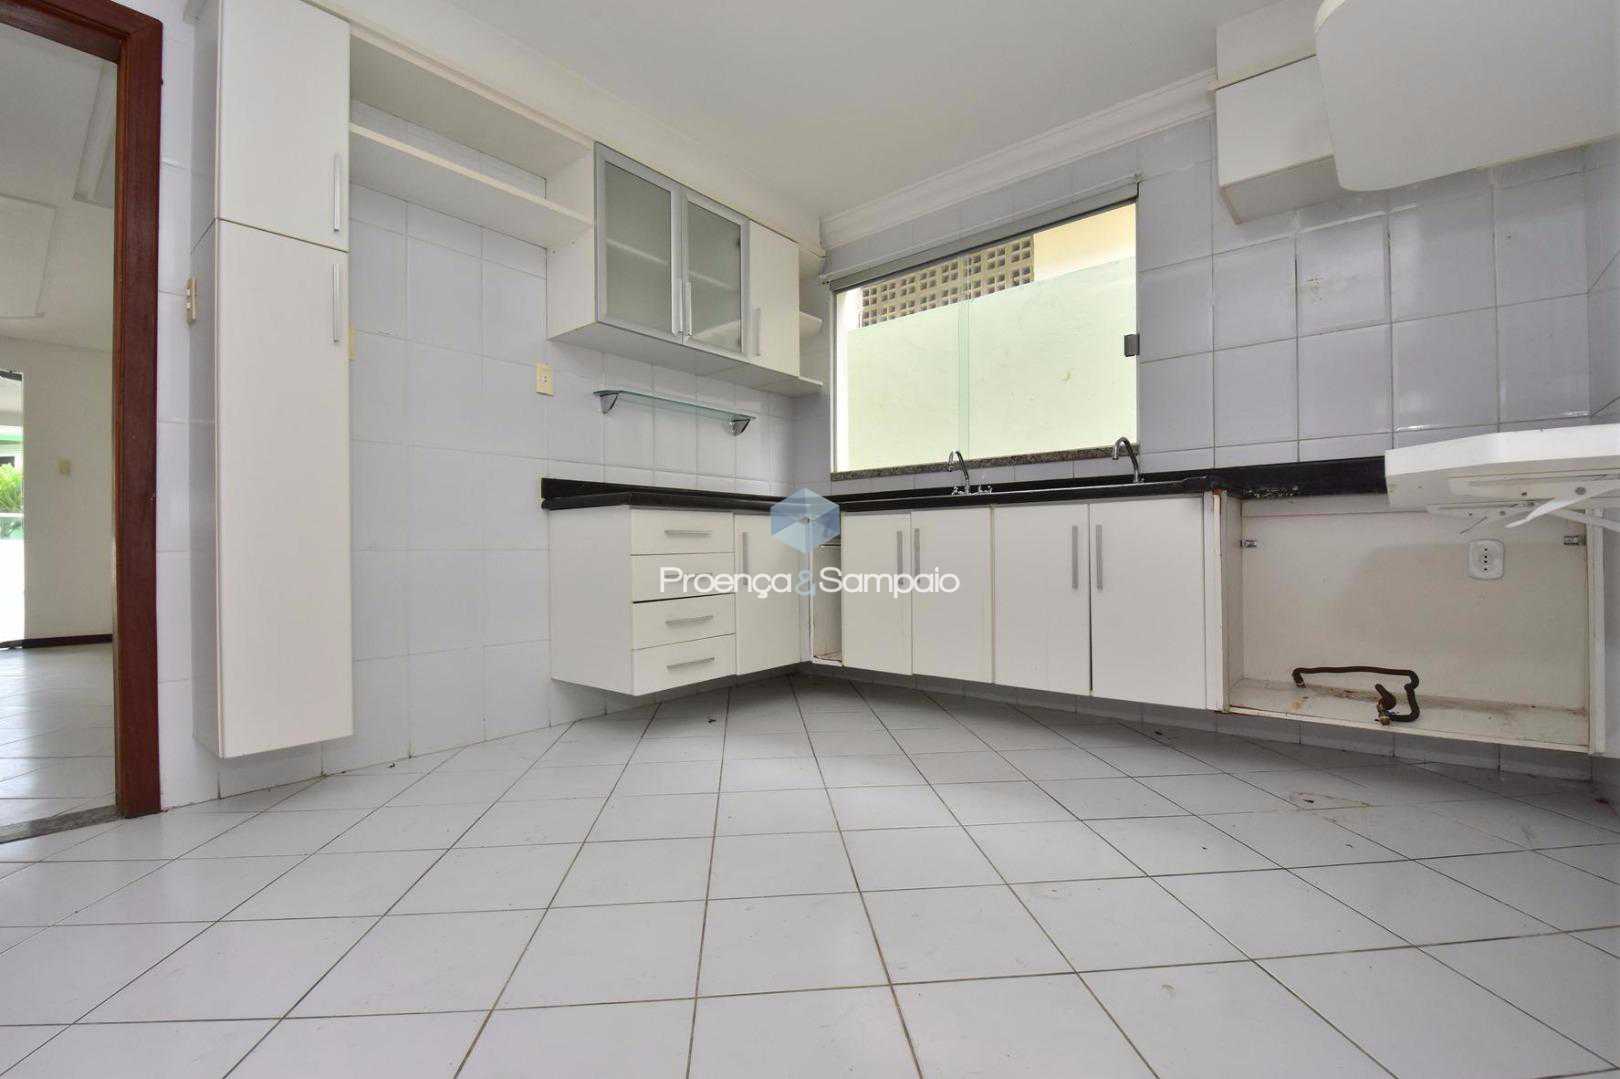 FOTO5 - Casa em Condomínio 4 quartos à venda Lauro de Freitas,BA - R$ 680.000 - PSCN40012 - 7